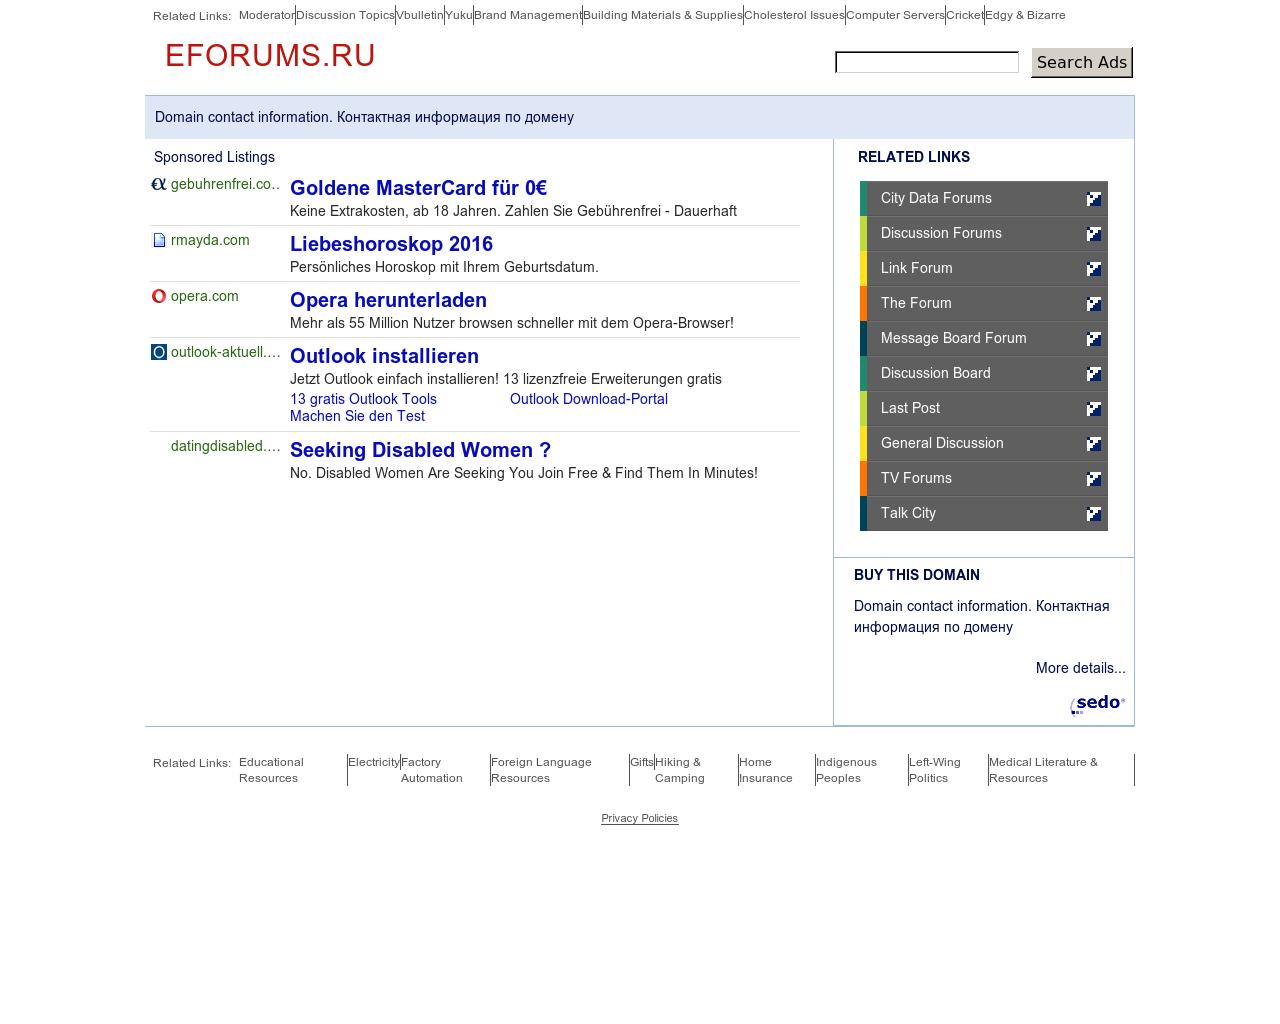 Изображение сайта eforums.ru в разрешении 1280x1024